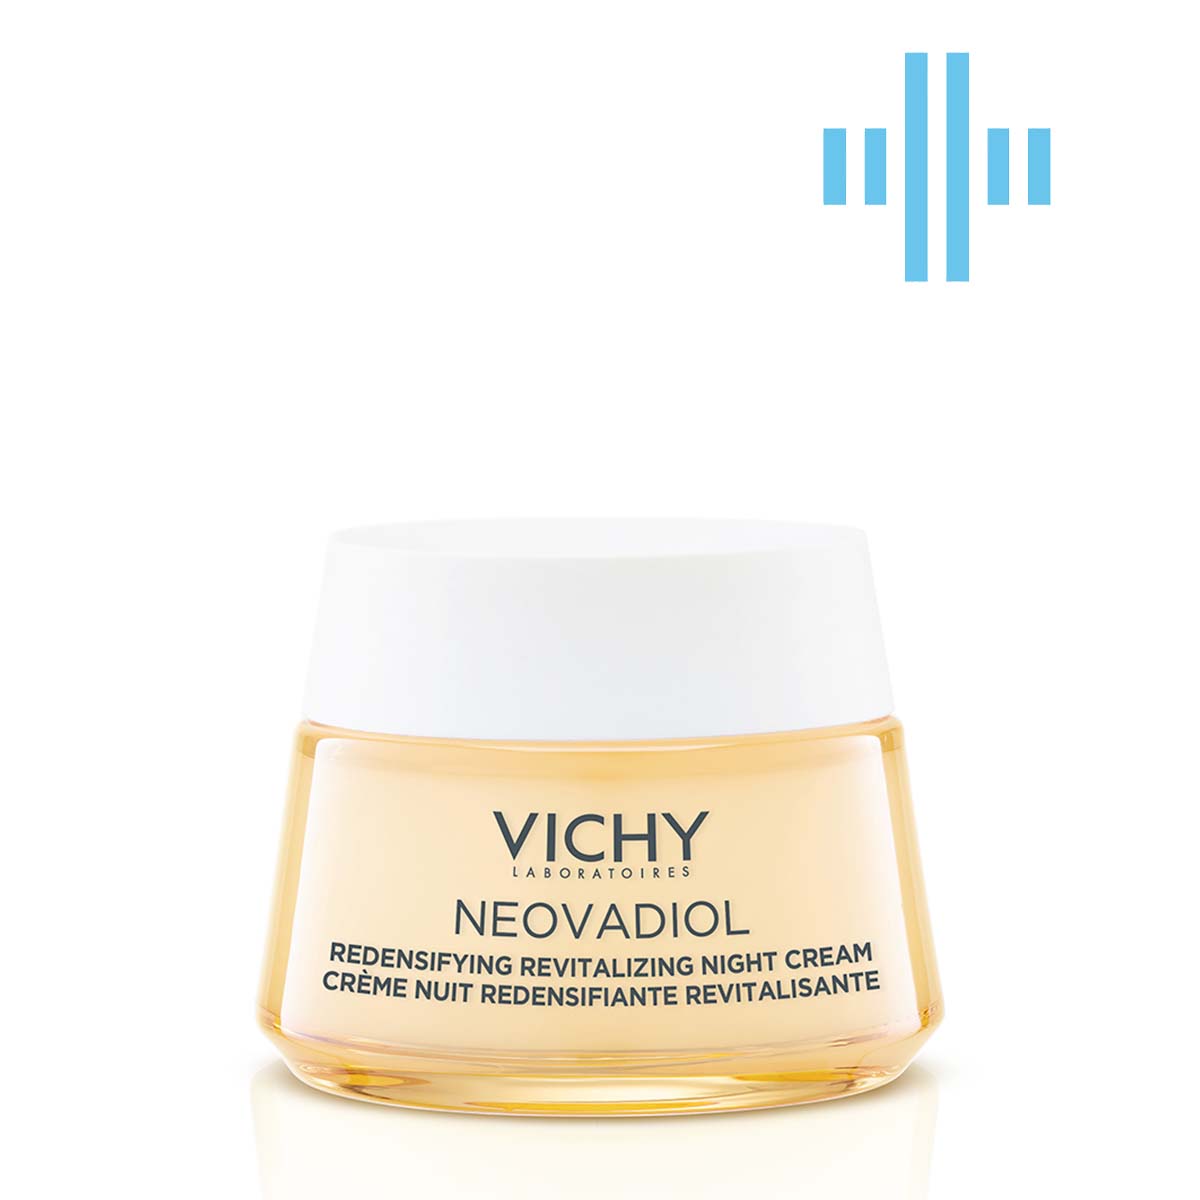 Ночной антивозрастной крем Vichy Neovadiol, с охлаждающим эффектом, для увеличения плотности и восстановления тонуса кожи лица, 50 мл (MB421900) - фото 1